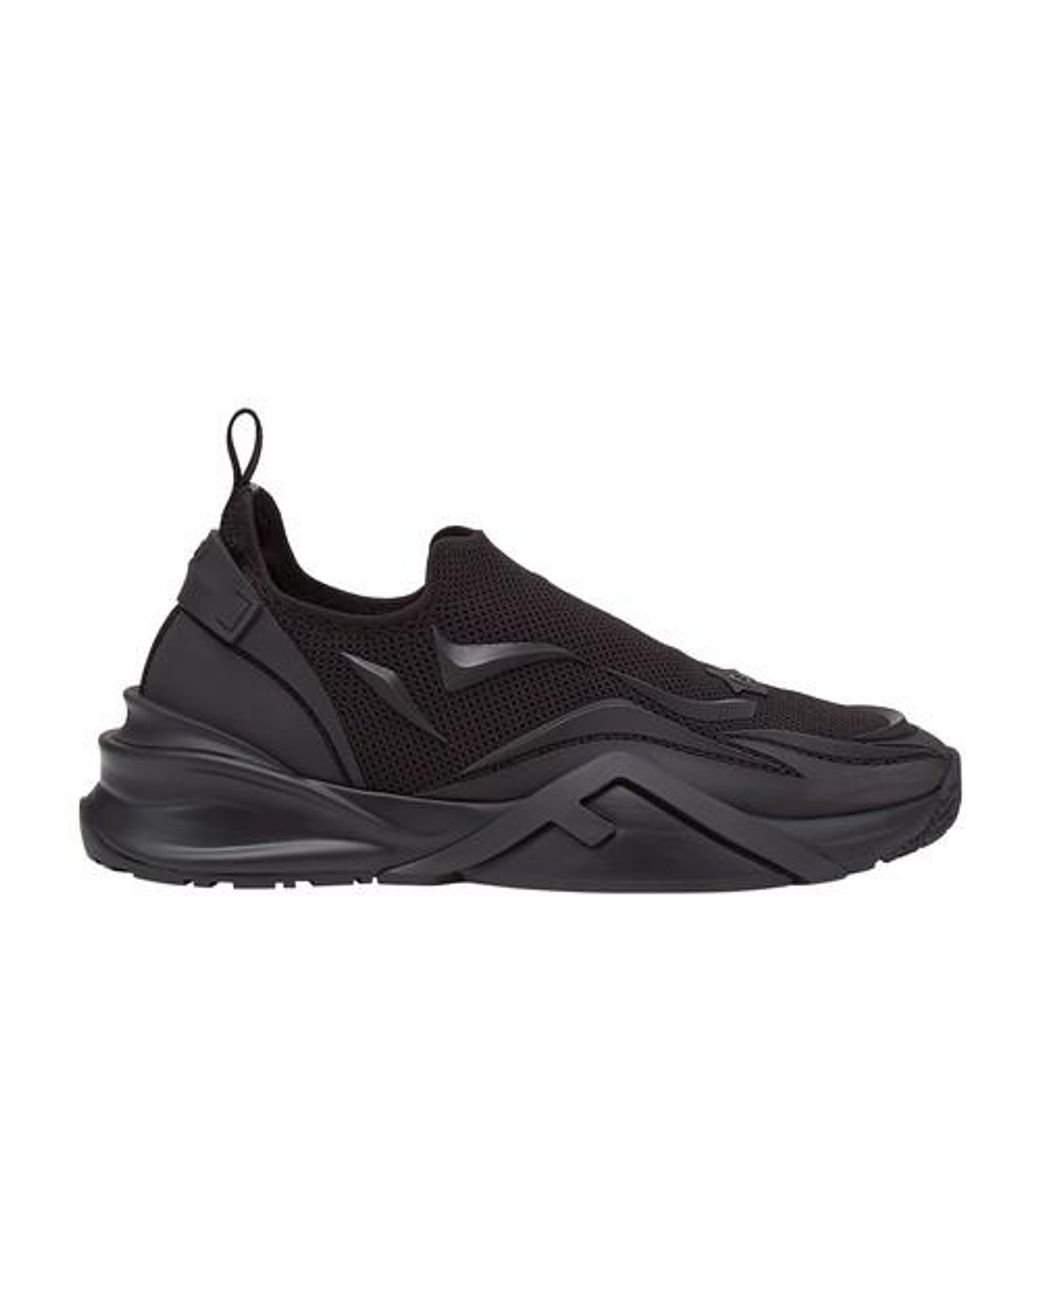 Fendi Flow Sneakers in Black for Men - Lyst